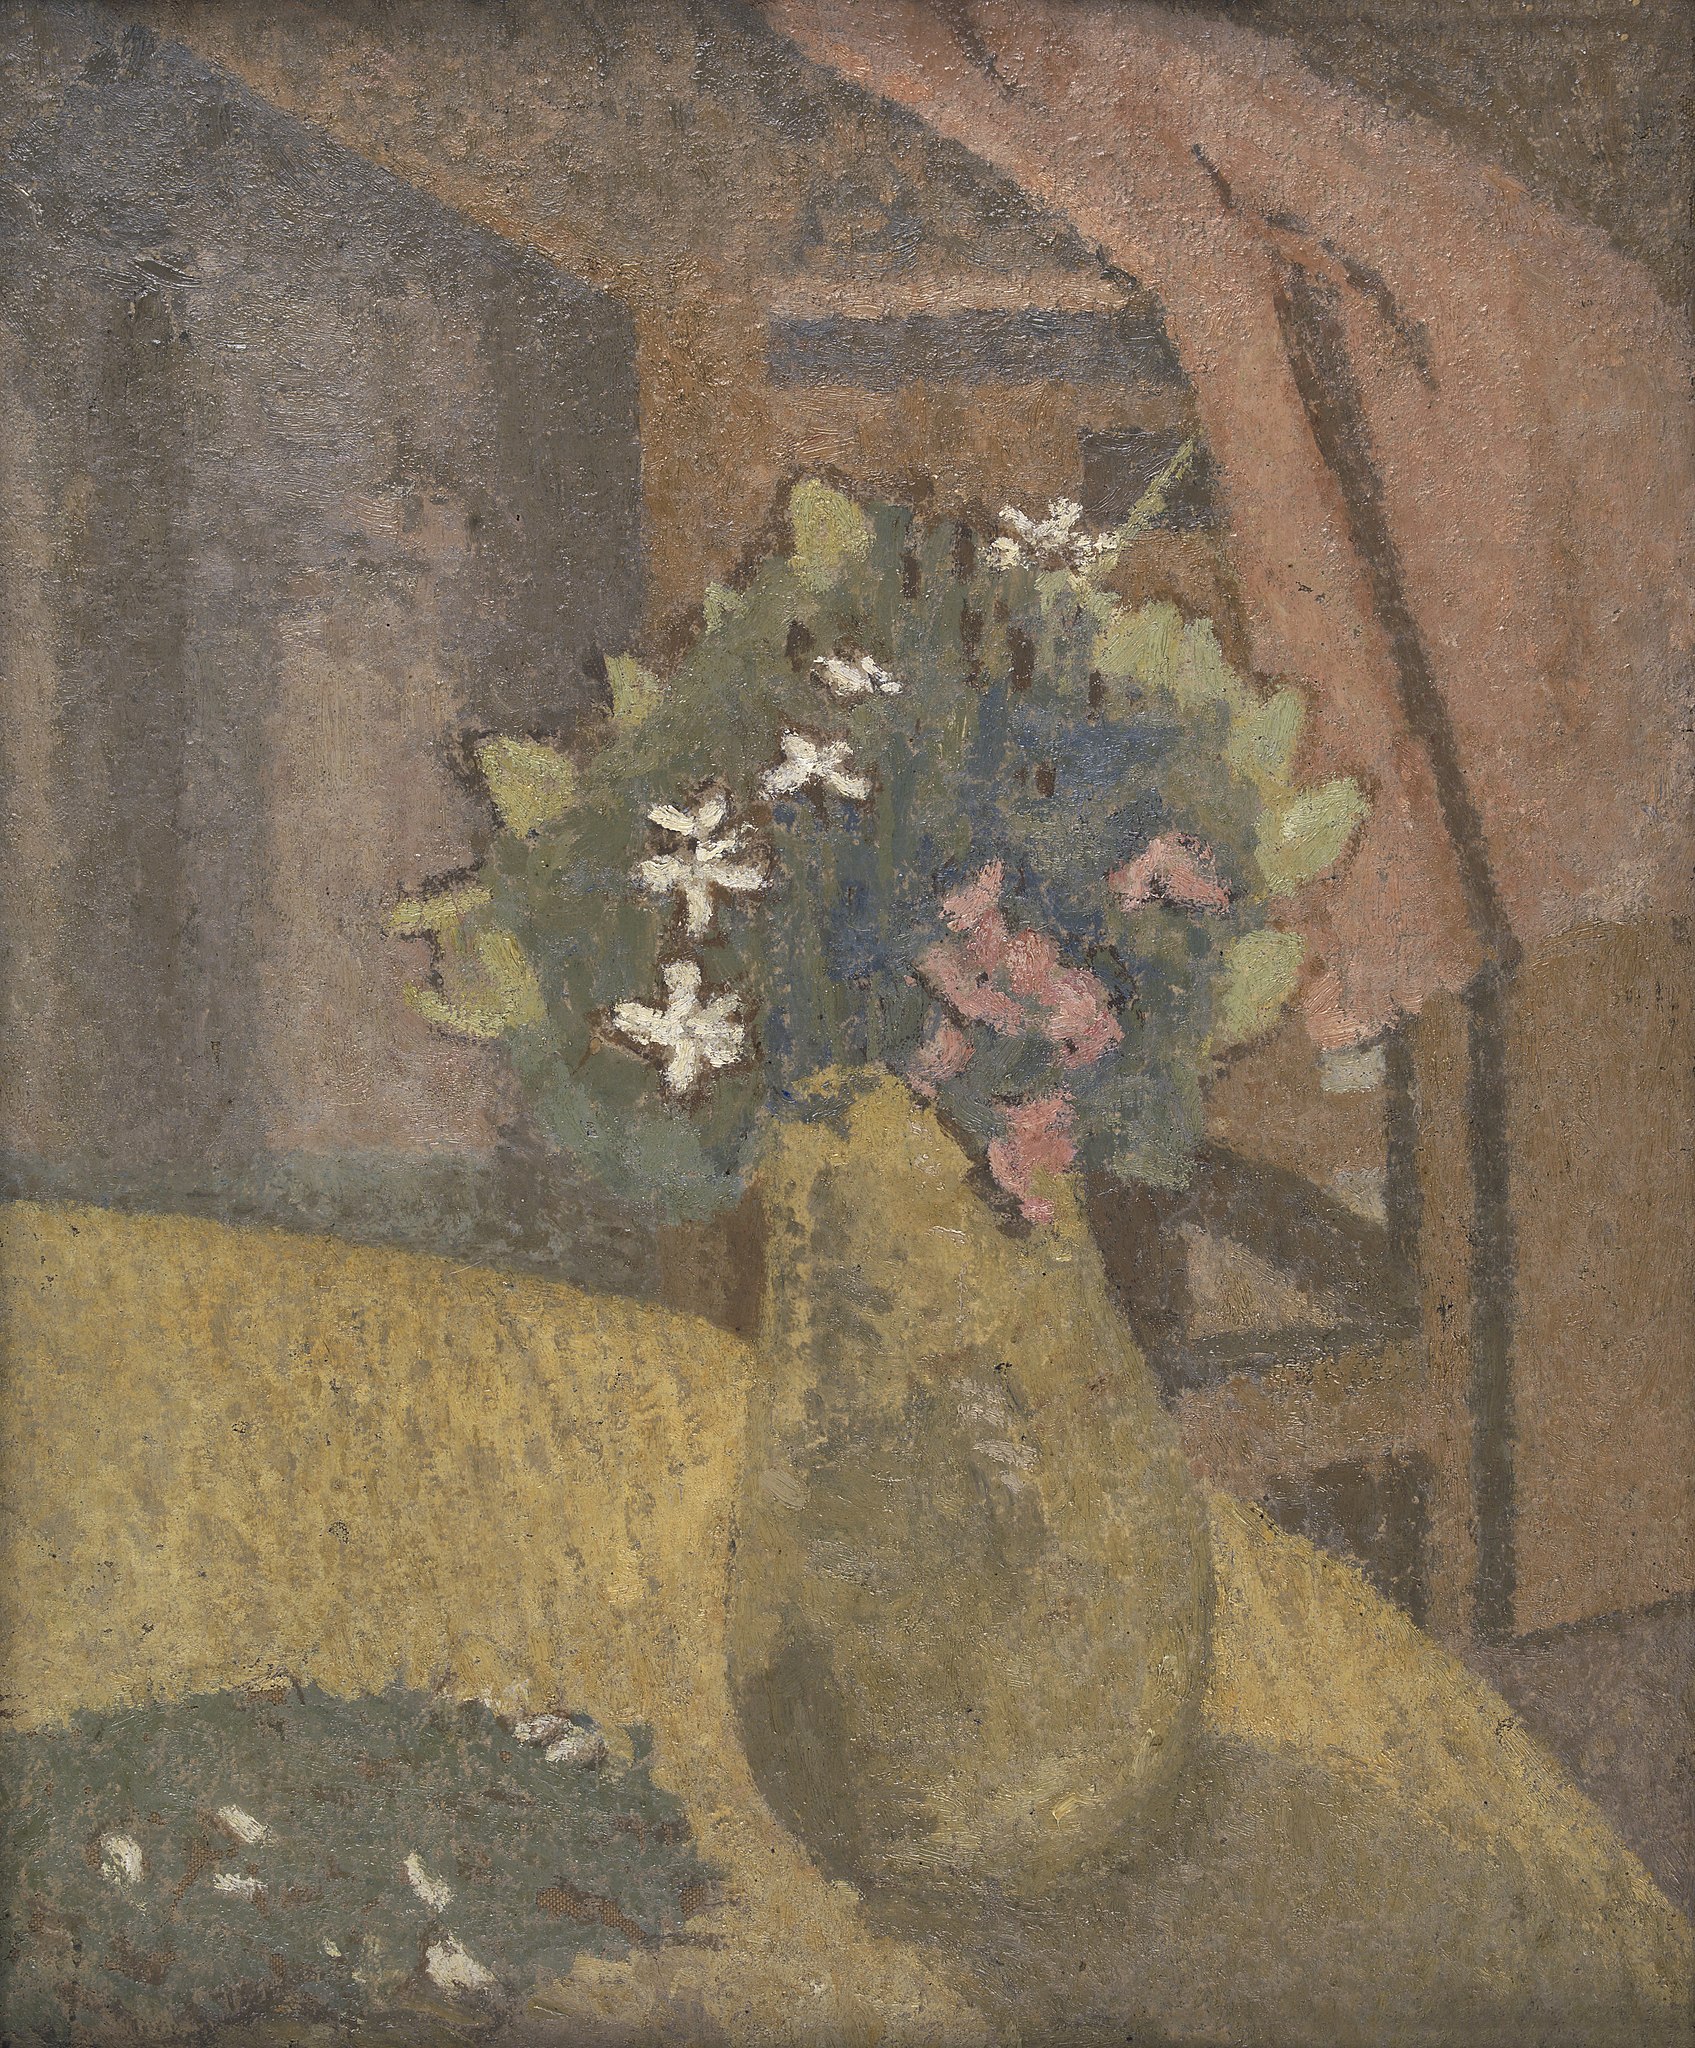 花瓶里的花 by 格温 约翰 - 1910s - 40 x 32 cm 